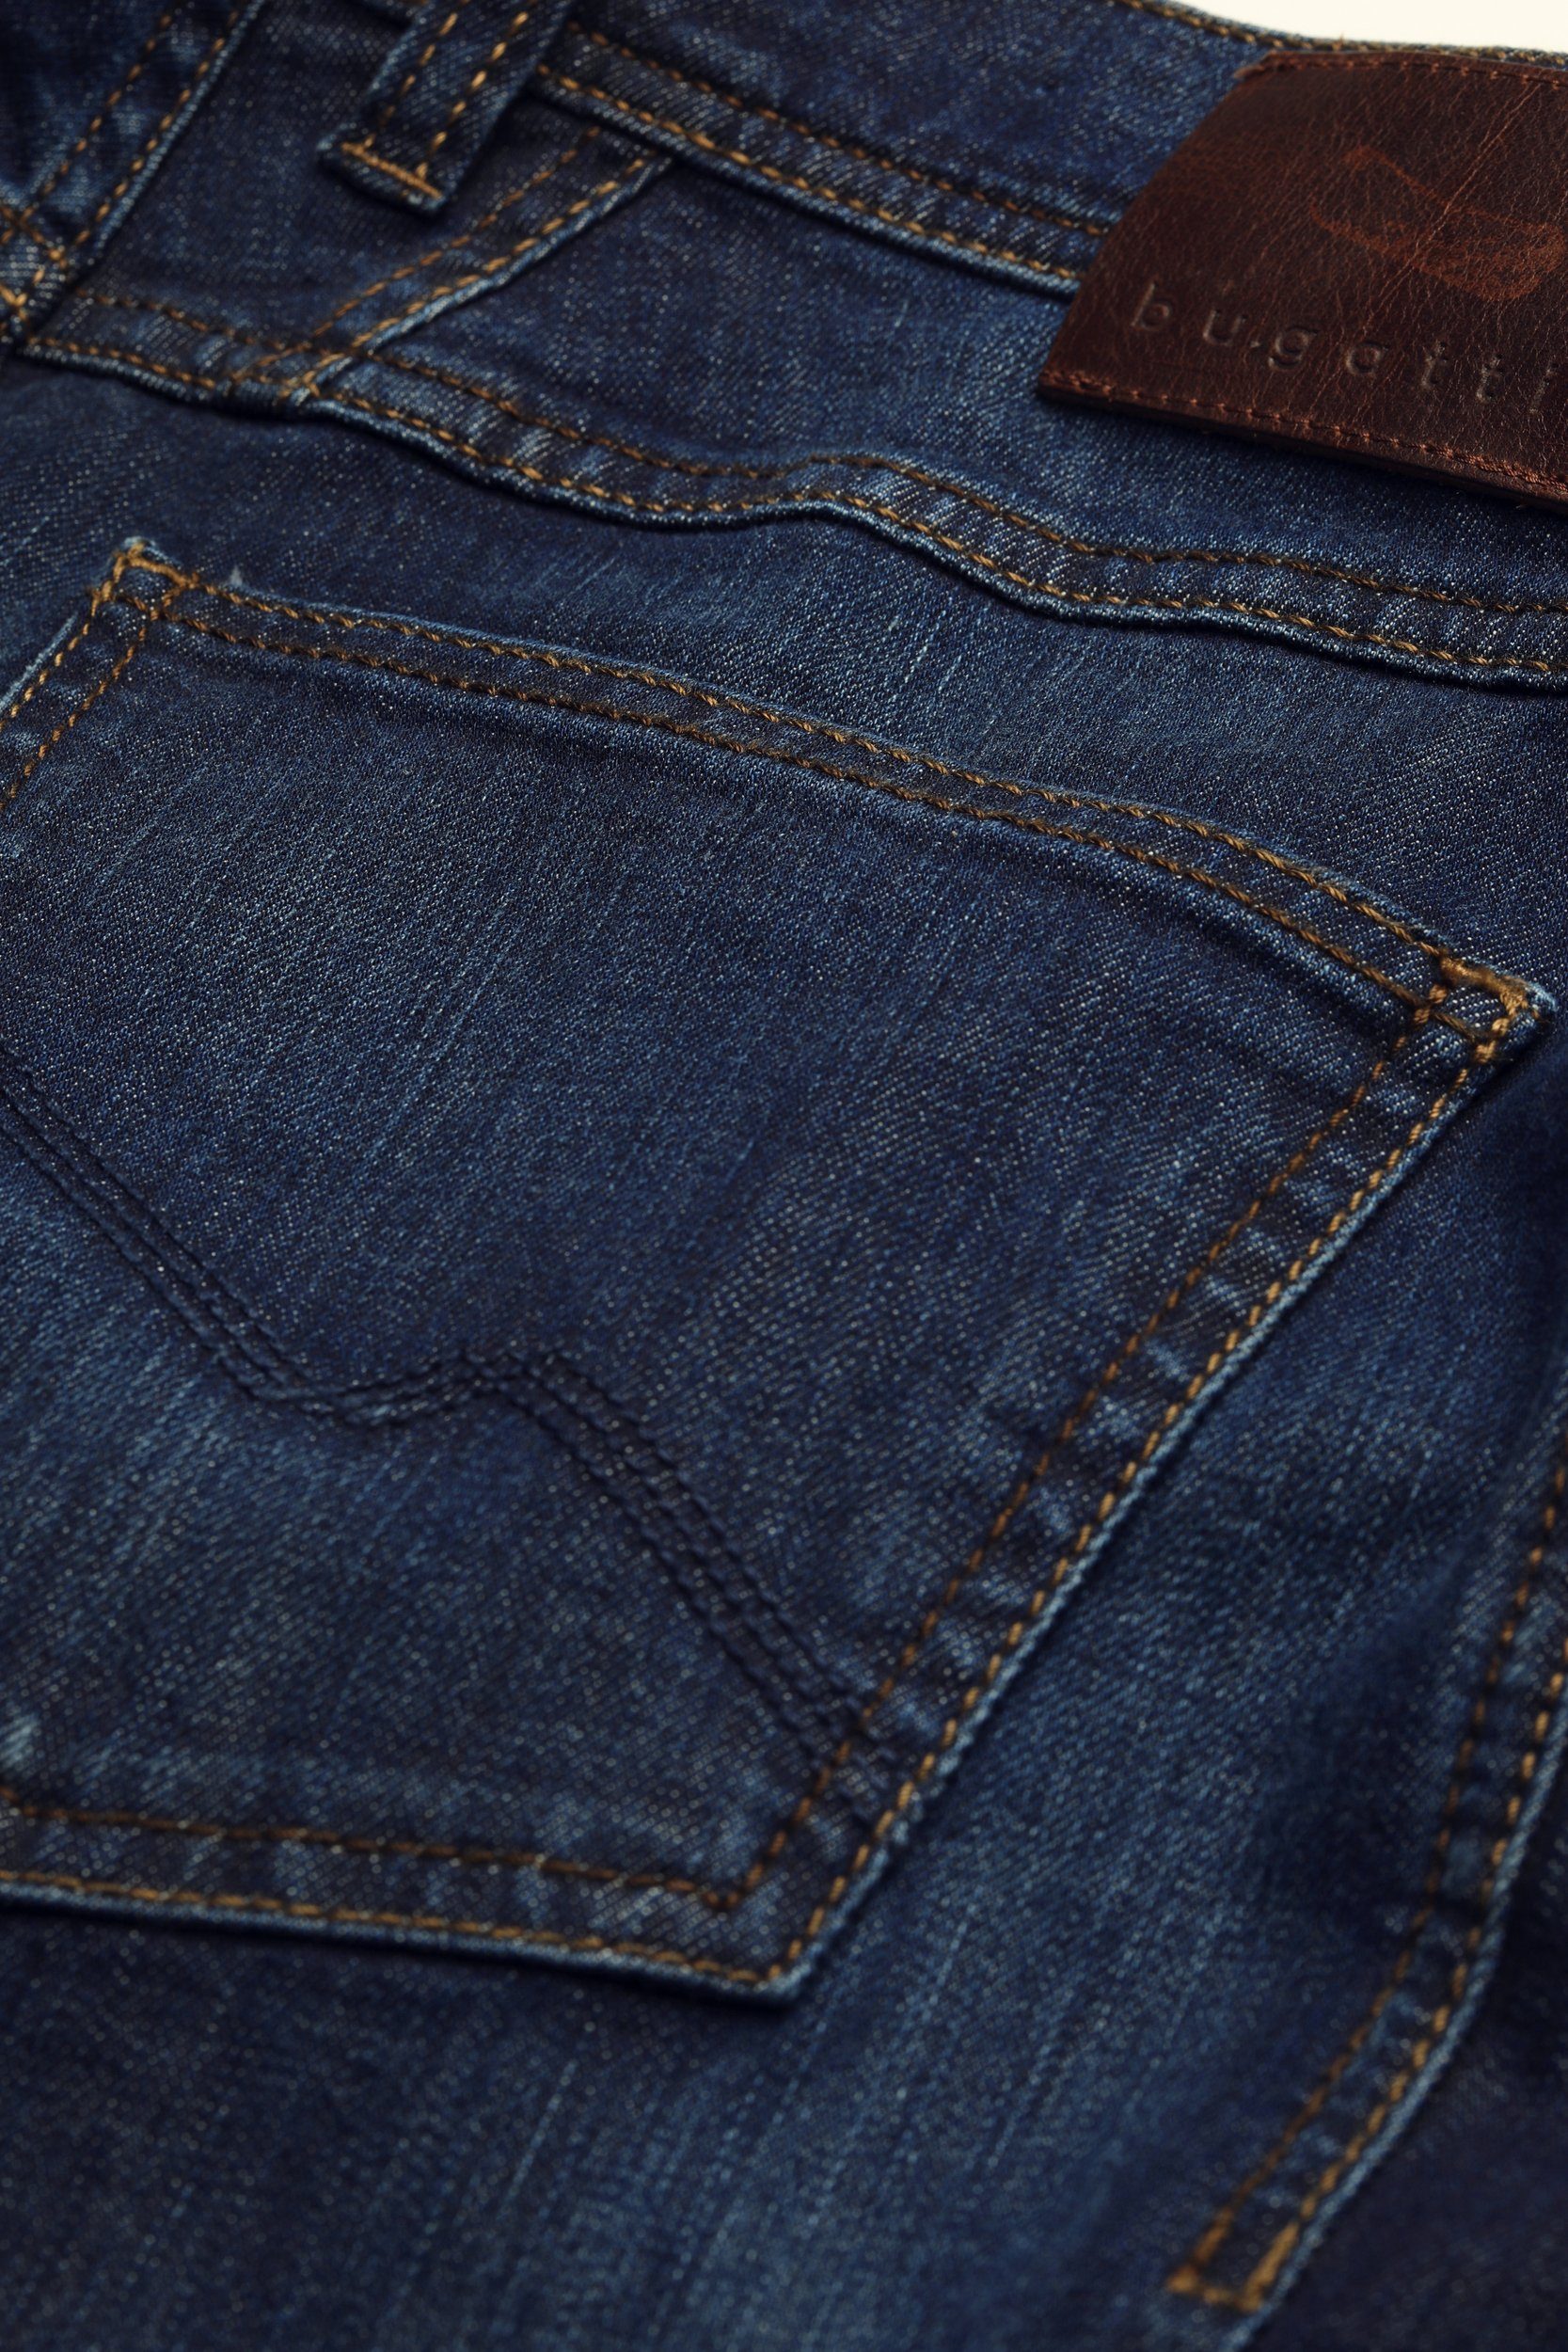 mit Used marine einem leichten Look 5-Pocket-Jeans bugatti